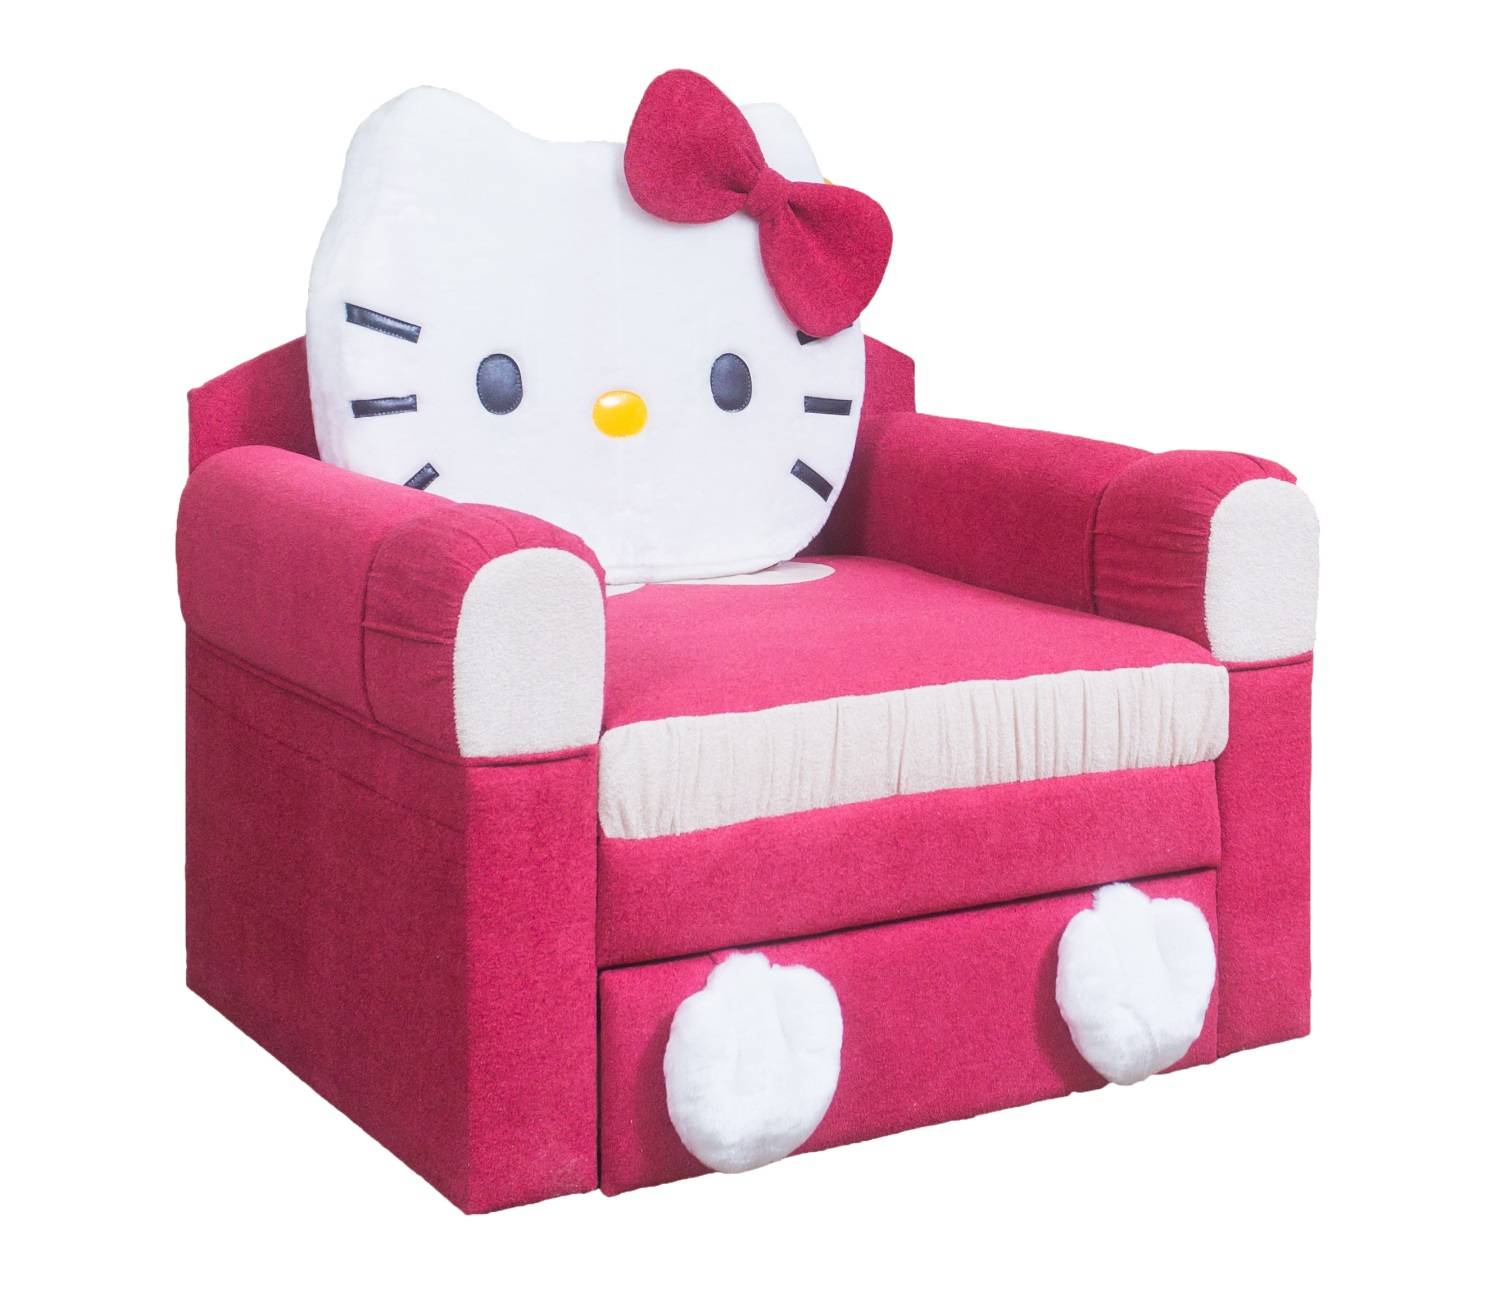 Детская мебель кресло. Кресло-кровать м-стиль Кити. Кресло кровать hello Kitty. Мебель Кити детская Китти. Диван кровать Хеллоу Китти.